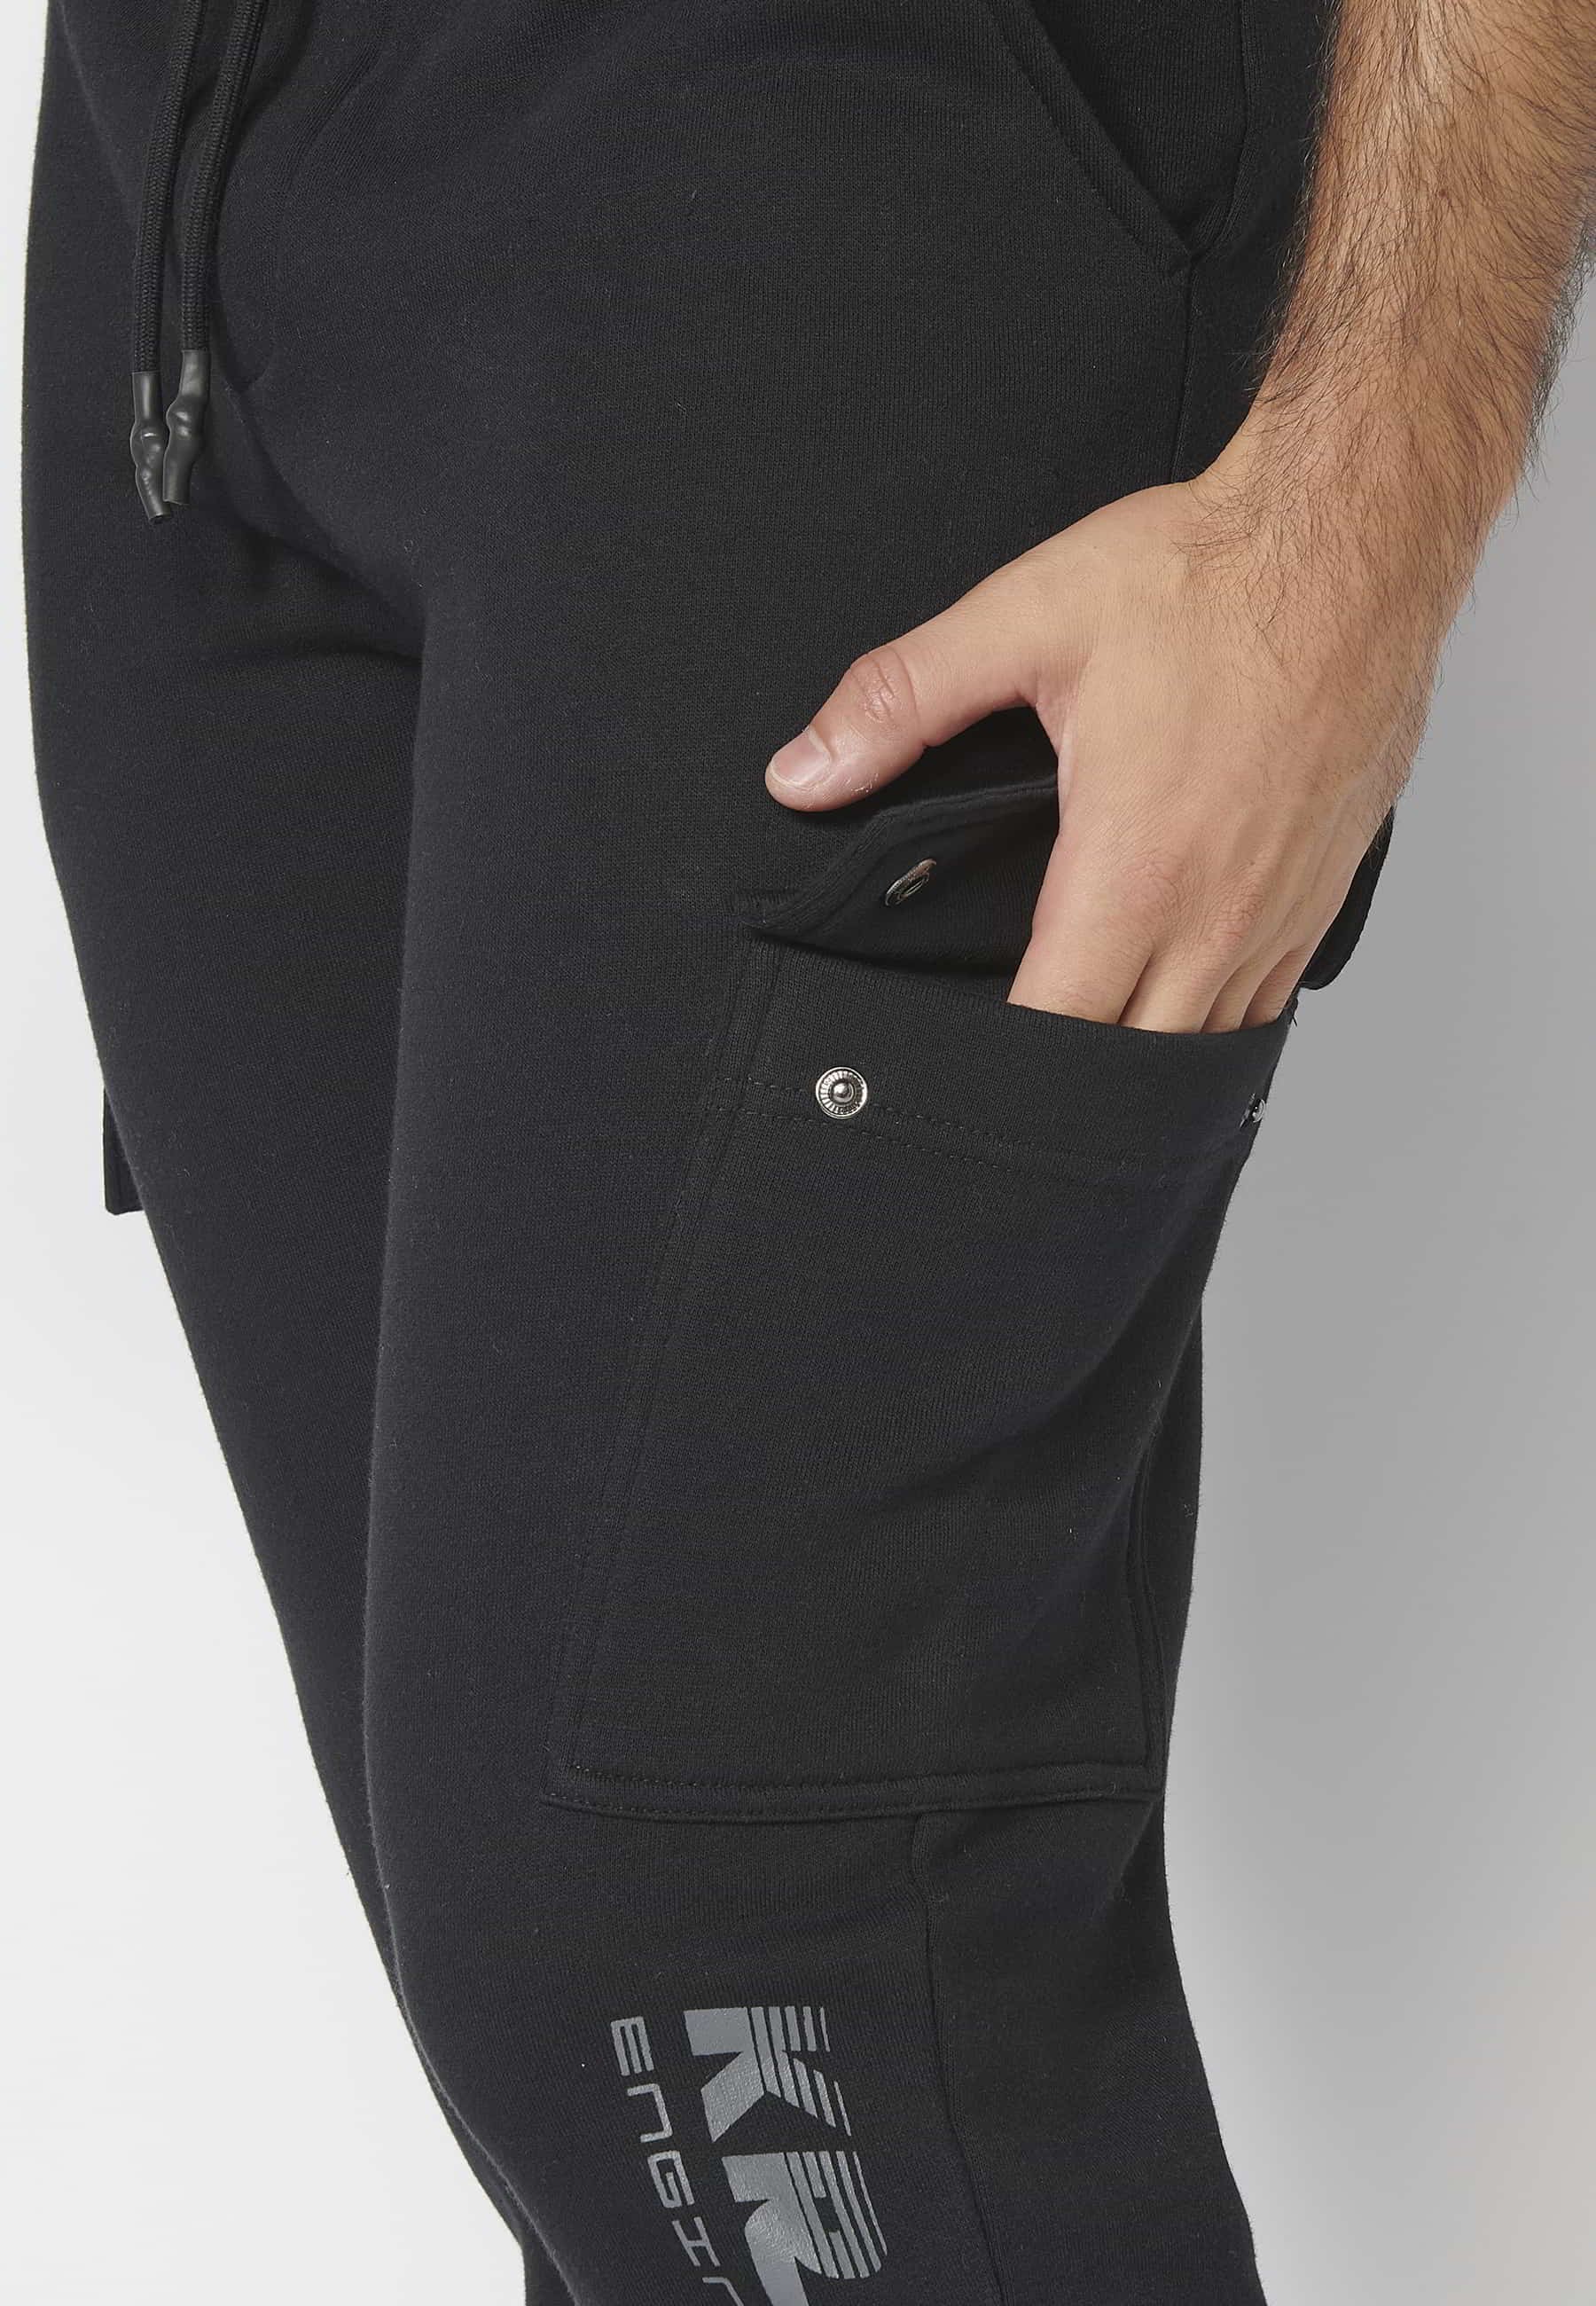 Pantalón Deportivo largo jogger con cintura elástica ajustable y bolsillos laterales color Negro para Hombre